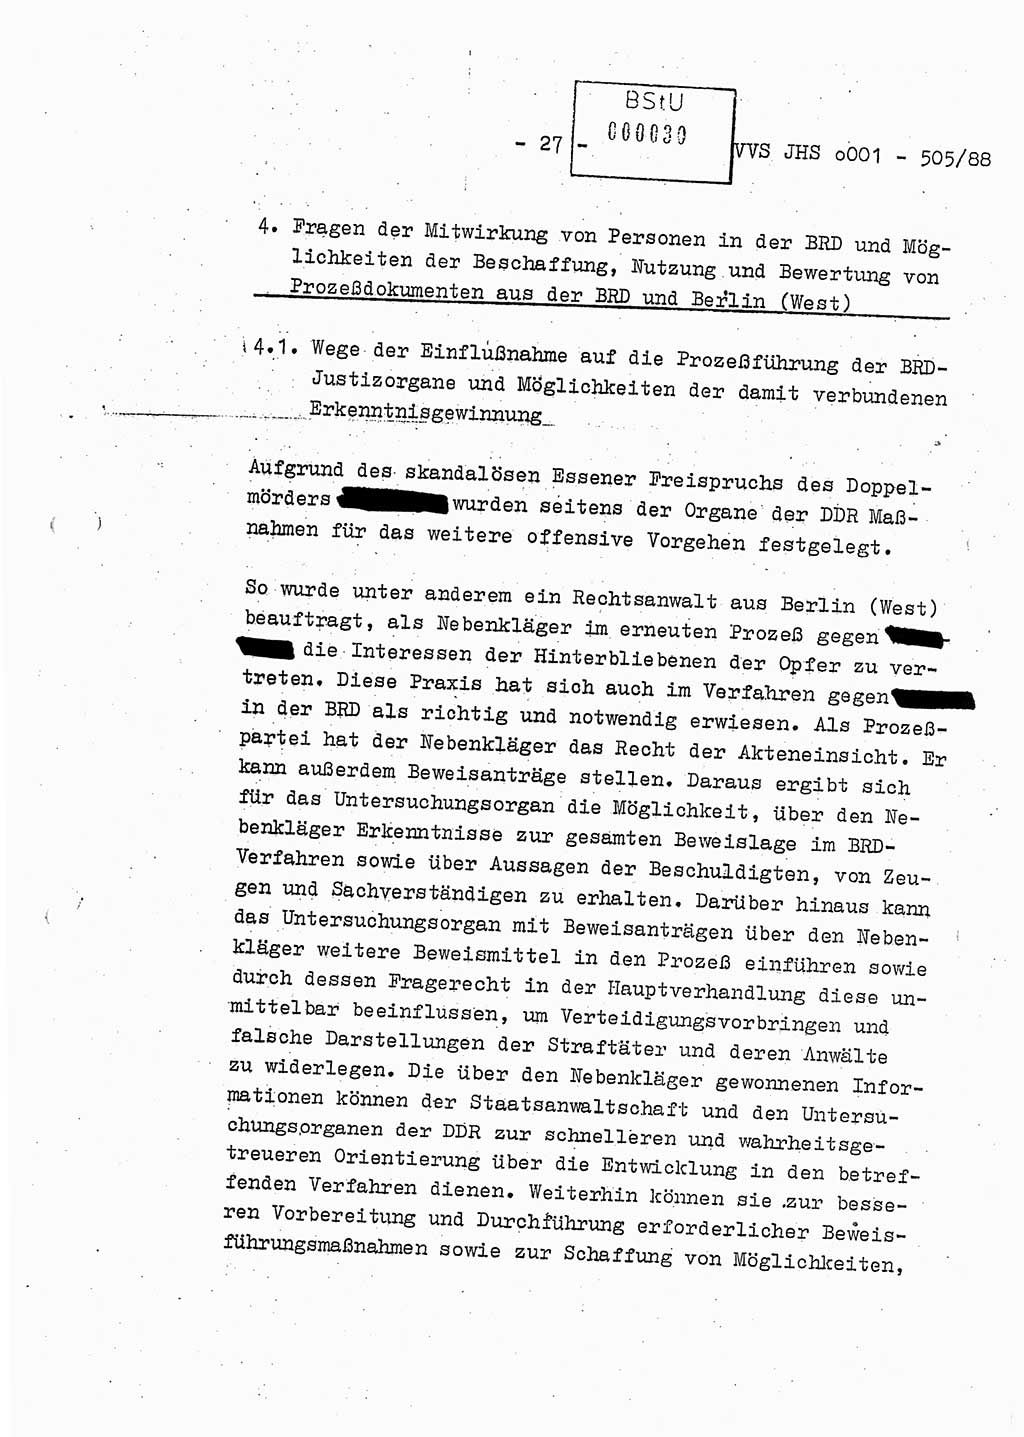 Diplomarbeit Leutnant Frank Schulze (HA Ⅸ/9), Ministerium für Staatssicherheit (MfS) [Deutsche Demokratische Republik (DDR)], Juristische Hochschule (JHS), Vertrauliche Verschlußsache (VVS) o001-505/88, Potsdam 1988, Seite 27 (Dipl.-Arb. MfS DDR JHS VVS o001-505/88 1988, S. 27)